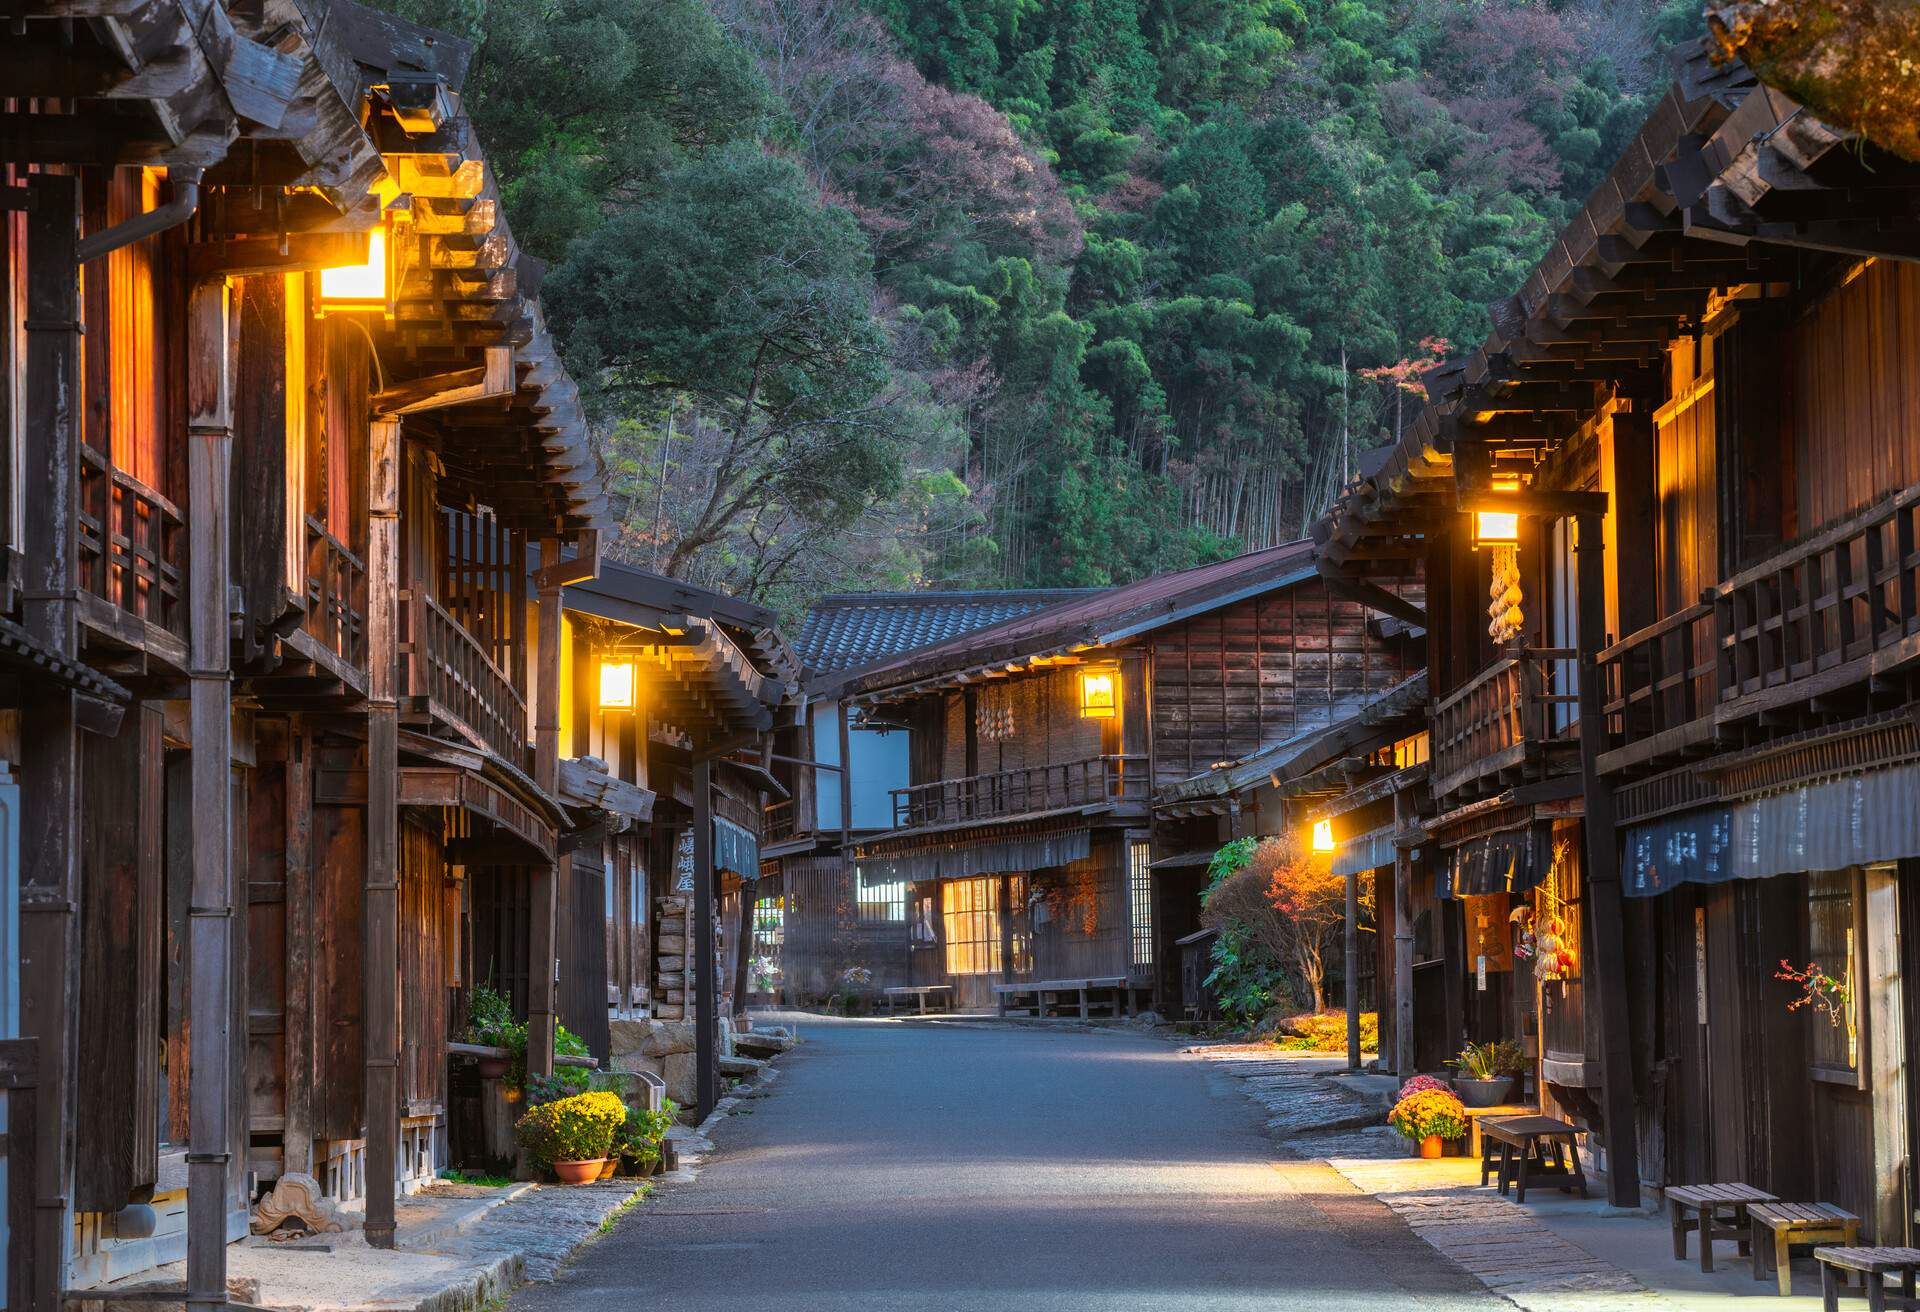 The historical post town of Tsumago juku at dusk, Kiso Valley,Gifu prefecture, Japan.